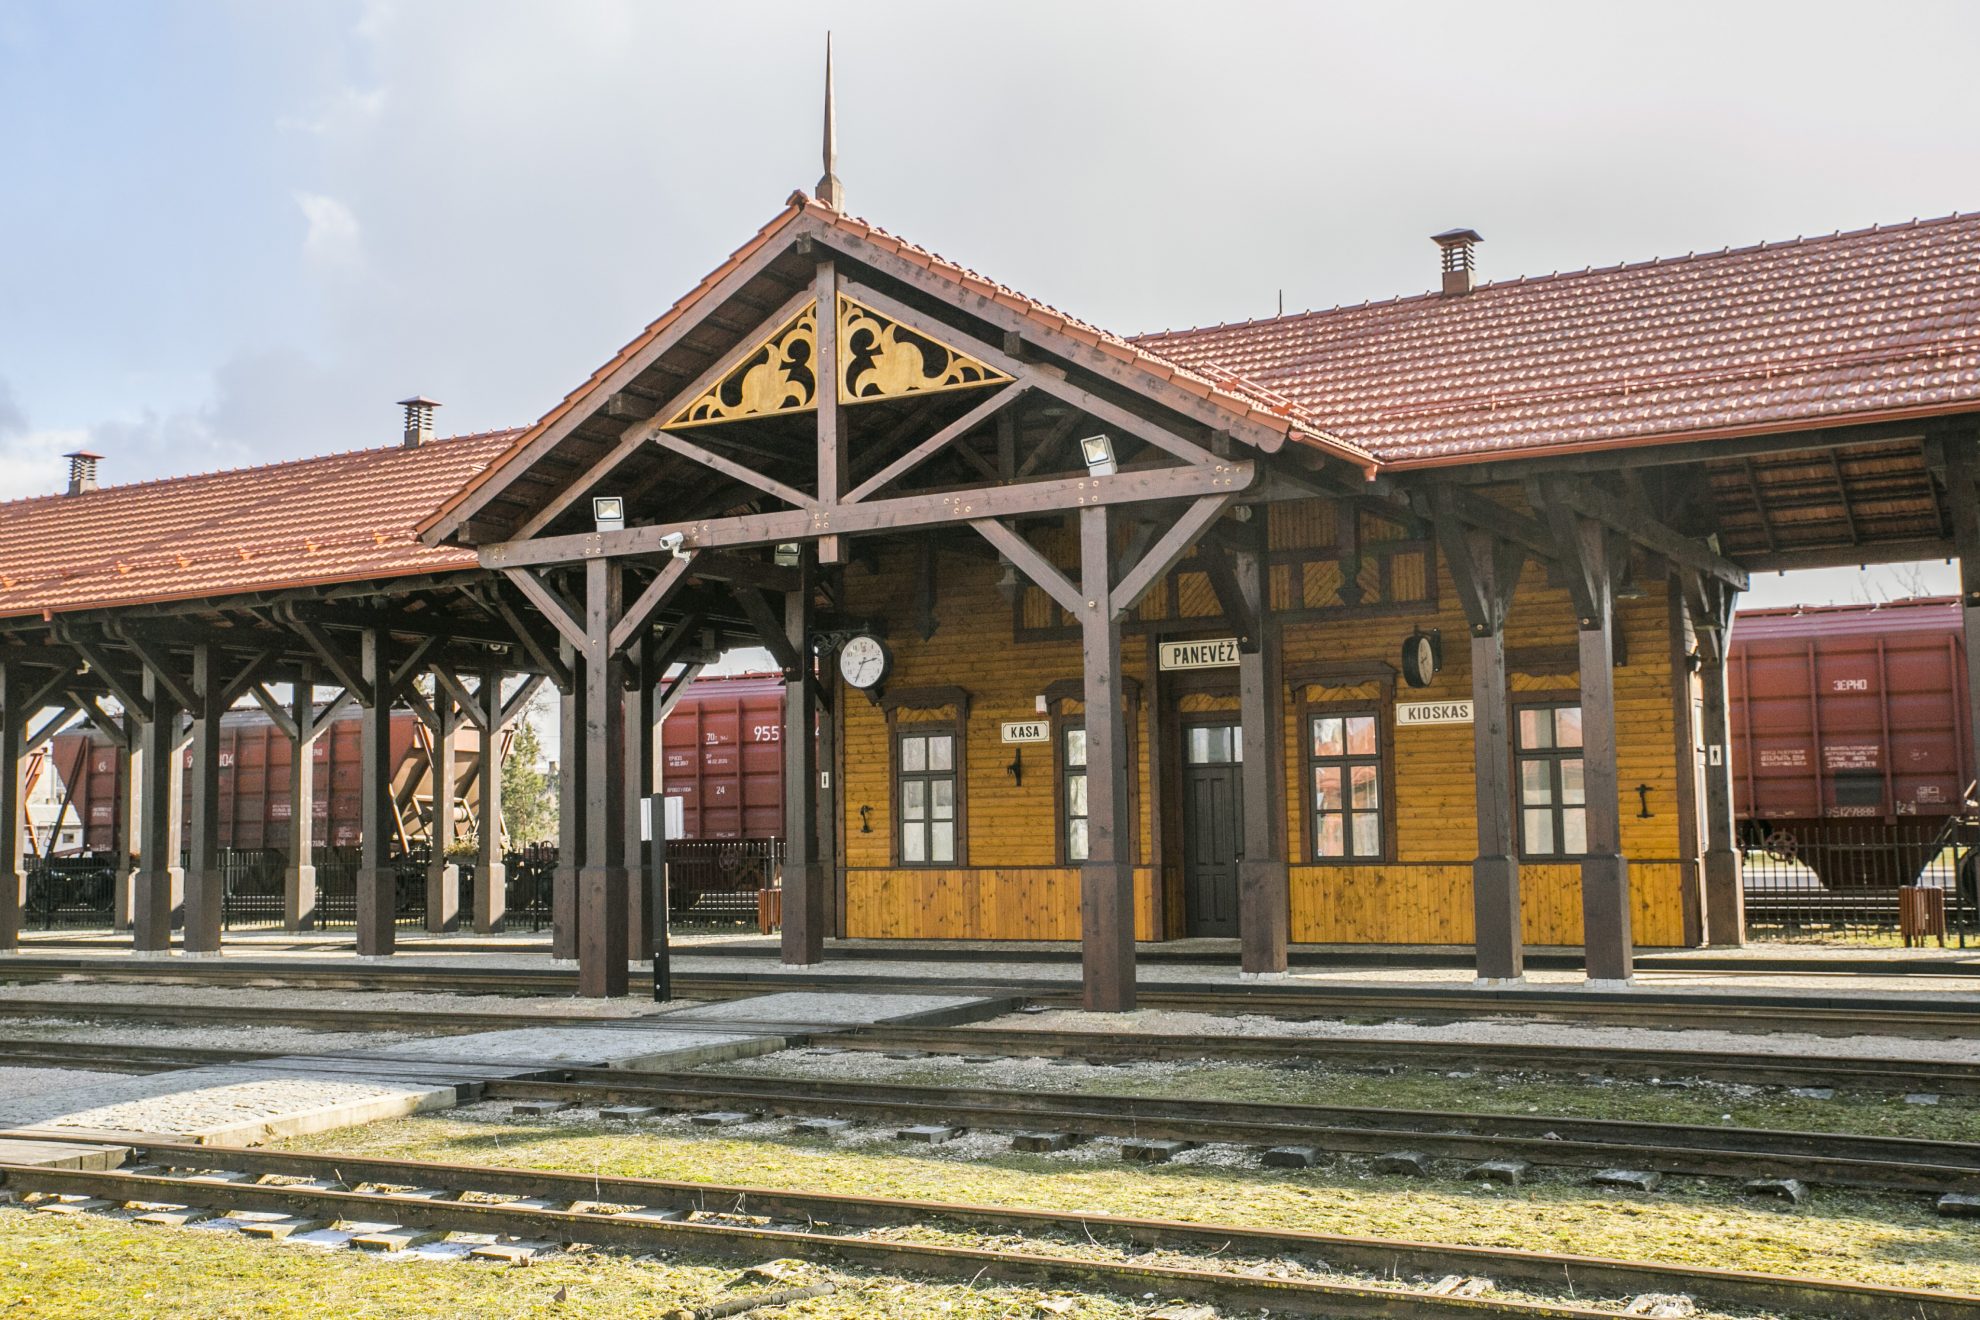 Ne tik vienas žinomiausių Rytų Aukštaitijoje turistų traukos objektų, bet ir didžiausia Lietuvoje nekilnojamoji kultūros vertybė, atspindinti XIX–XX a. sandūros meną, architektūrą ir techninę pažangą, siaurojo geležinkelio kompleksas su romantiškomis stotimis išgyvena krizę.